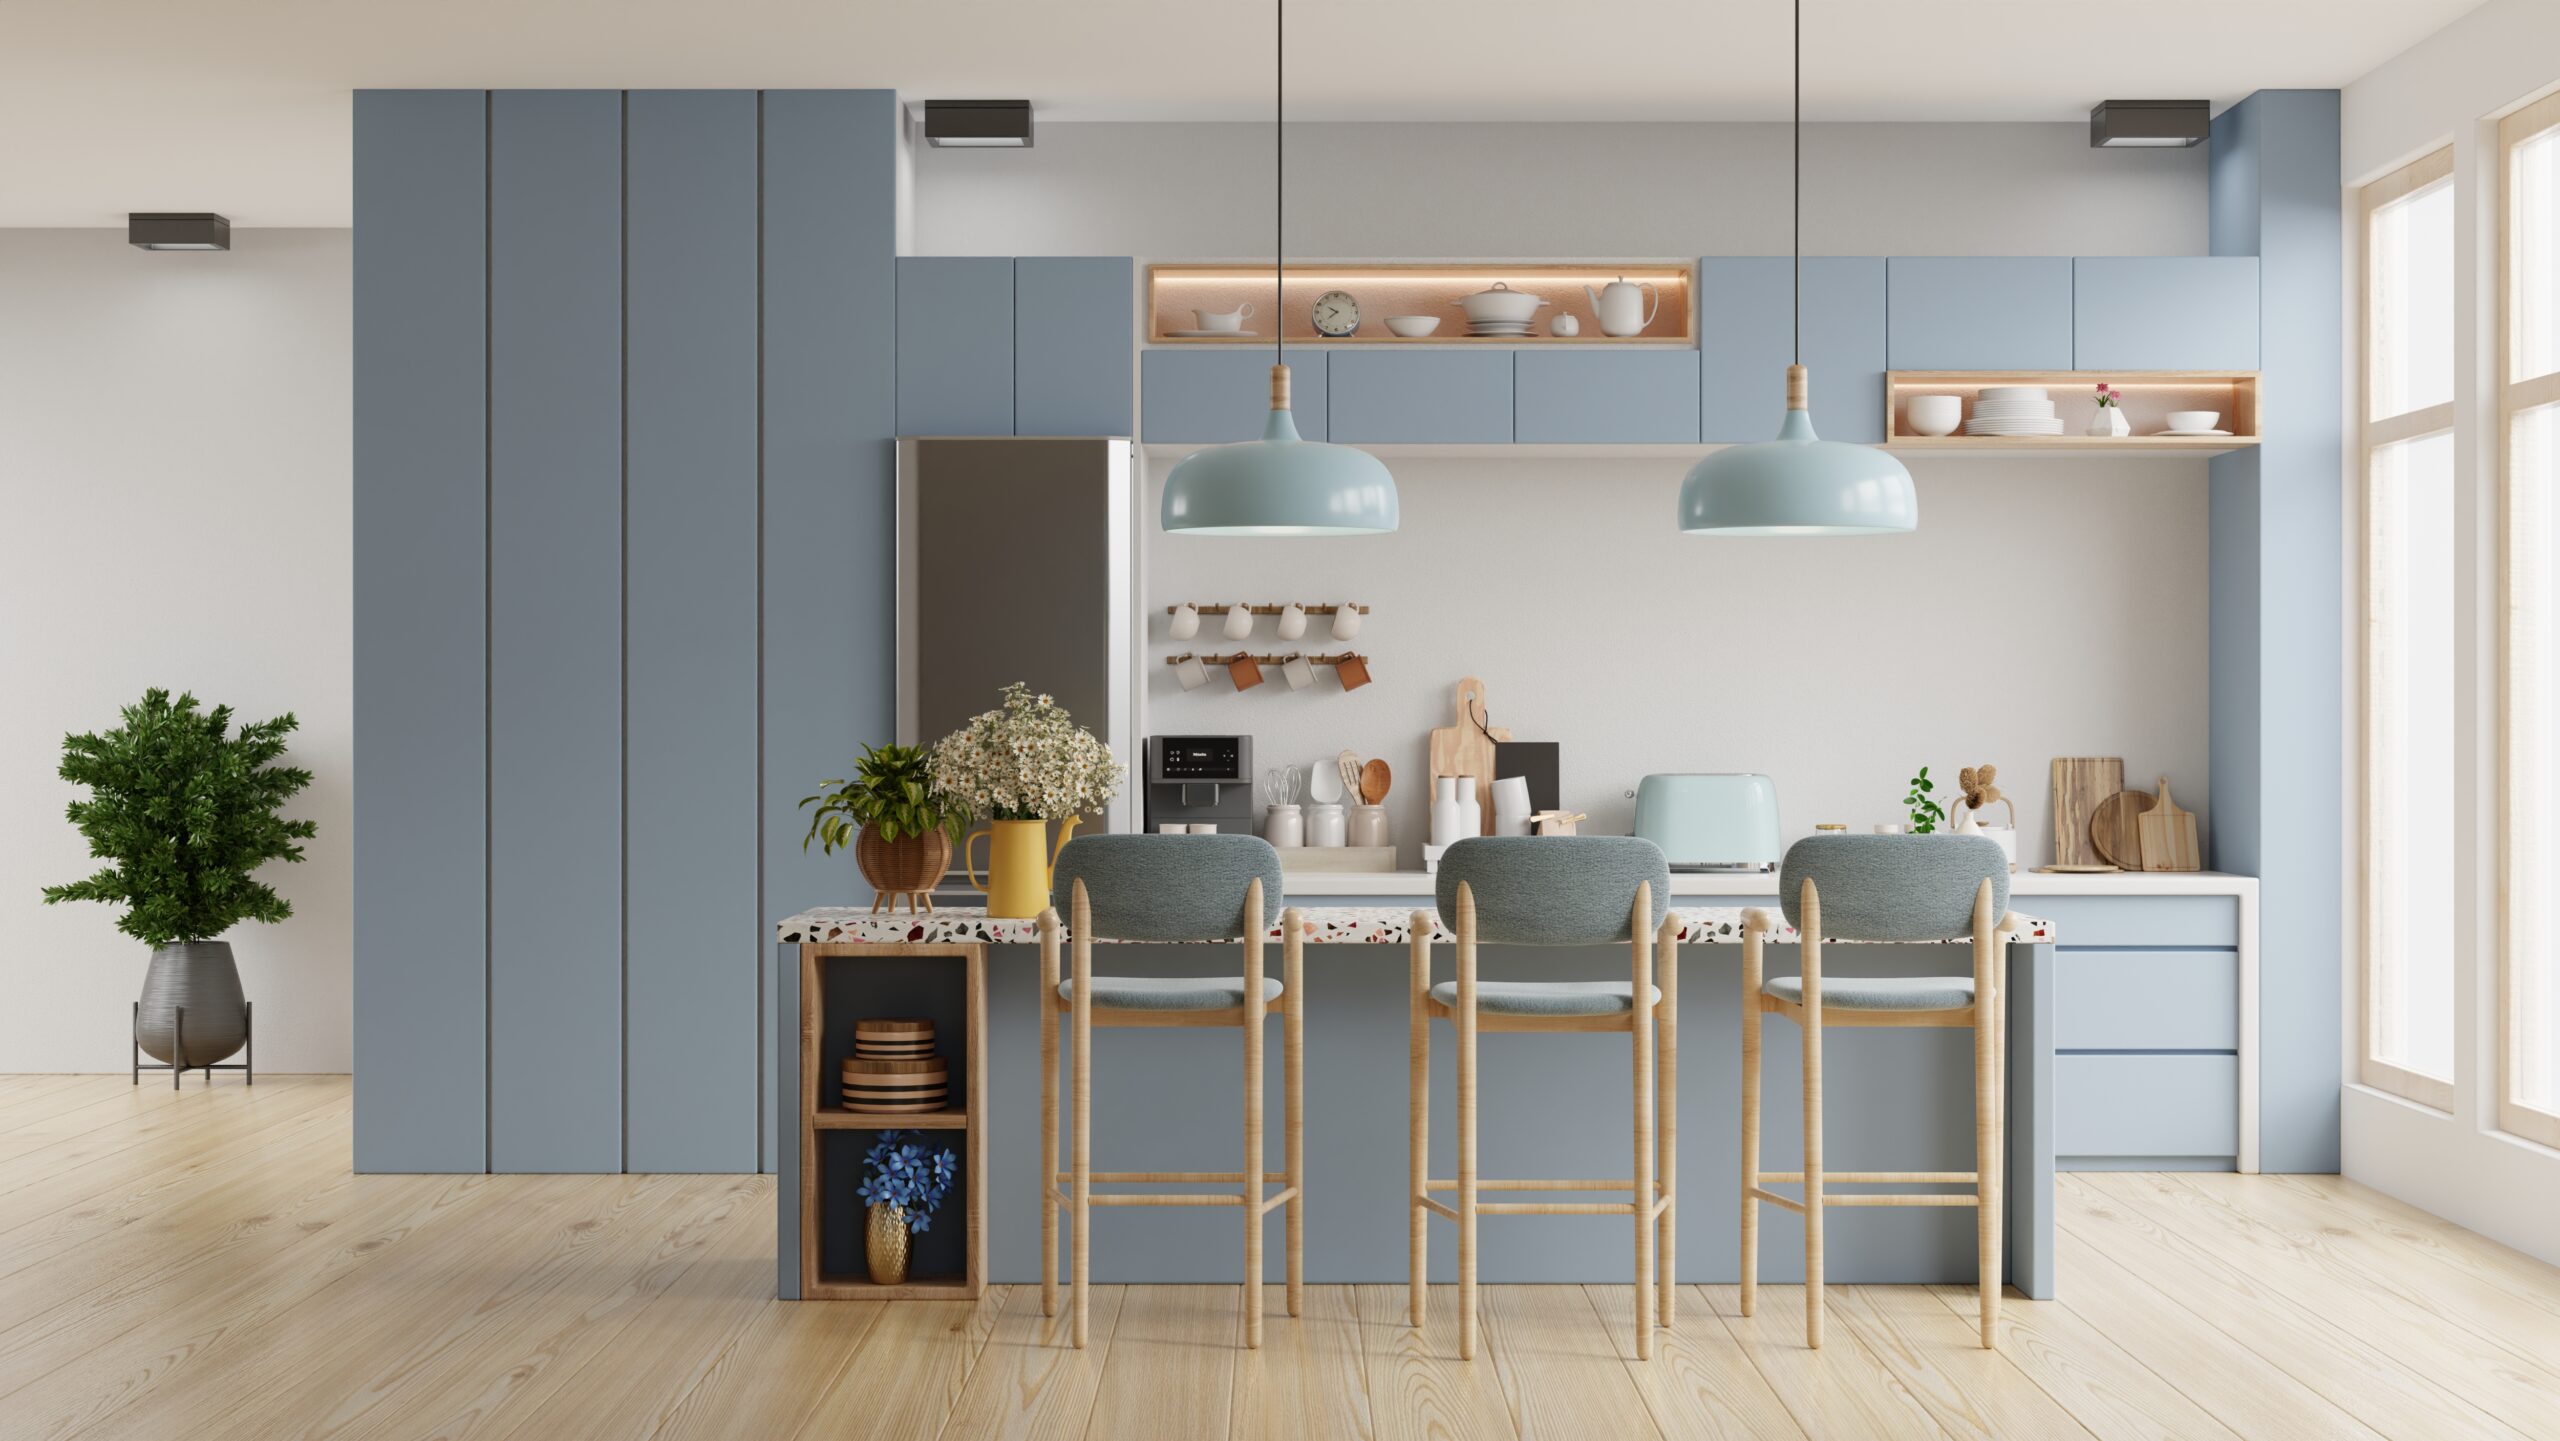 Modern blue kitchen interior with furniture,kitchen interior with white wall.3d rendering